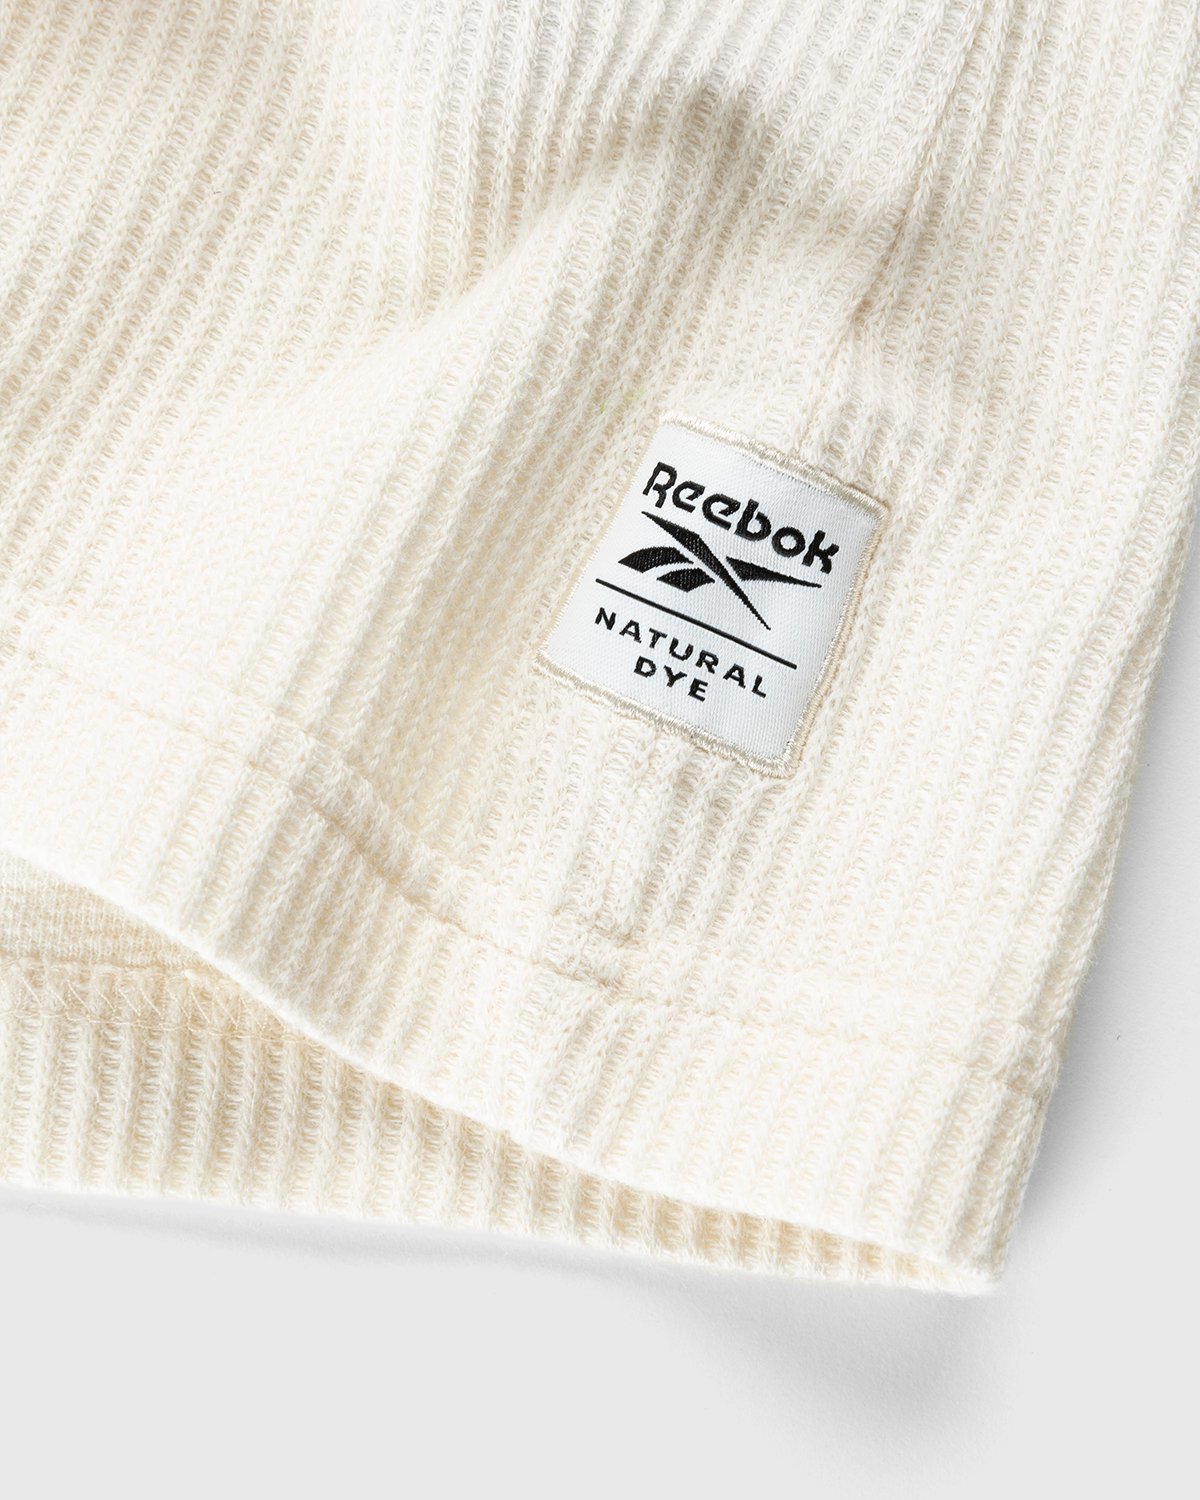 Reebok - Classics Natural Dye Waffle Crew Sweatshirt Non Dyed - Clothing - White - Image 3